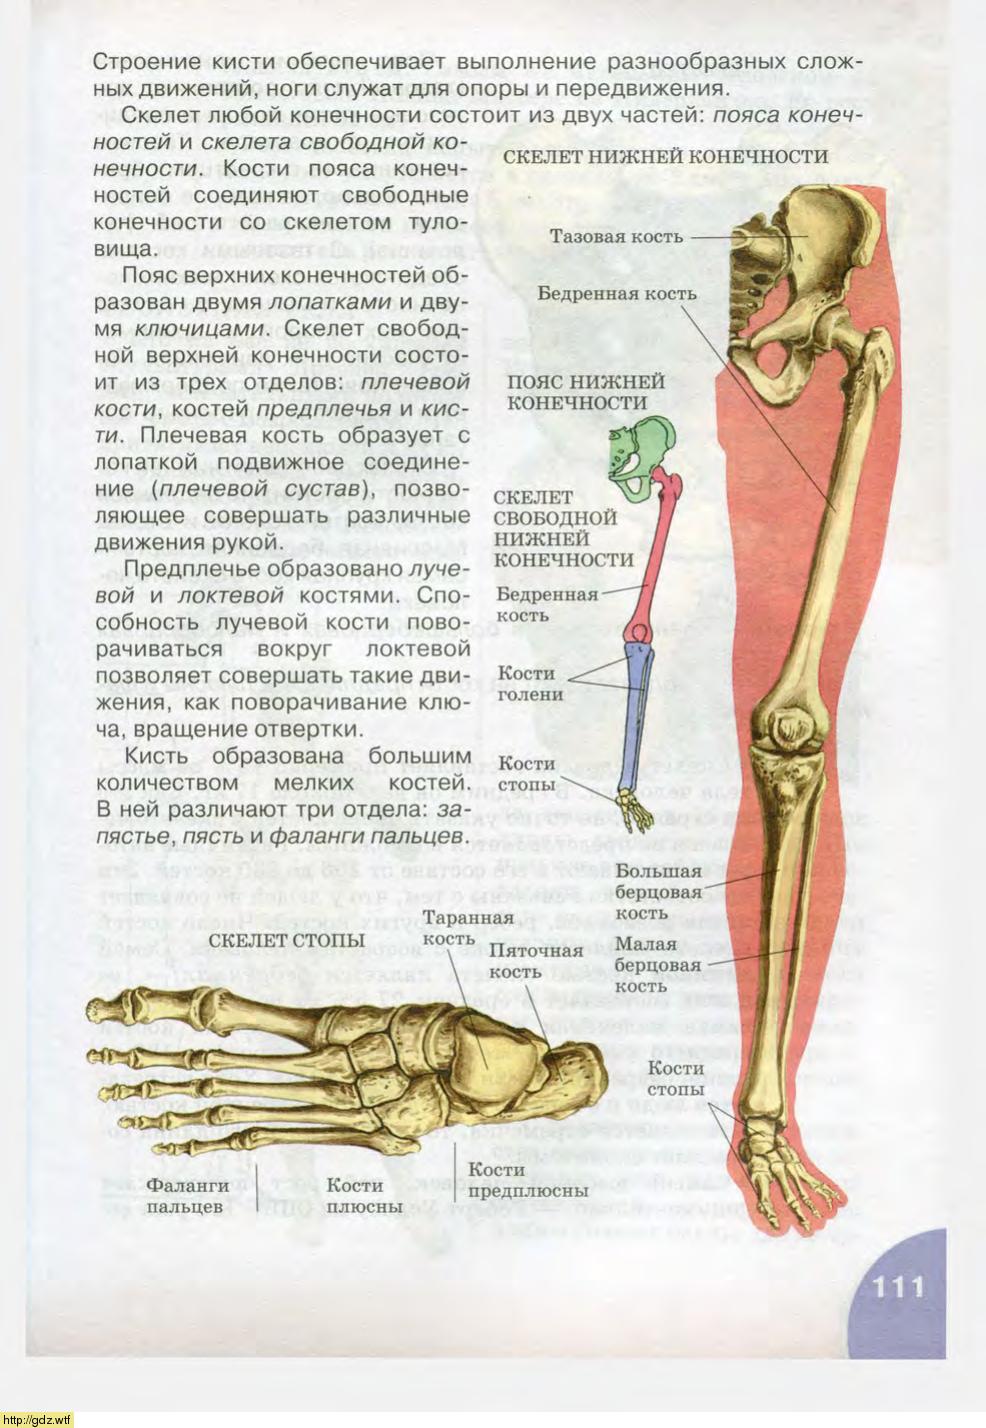 Скелет нижней конечности биология 8 класс